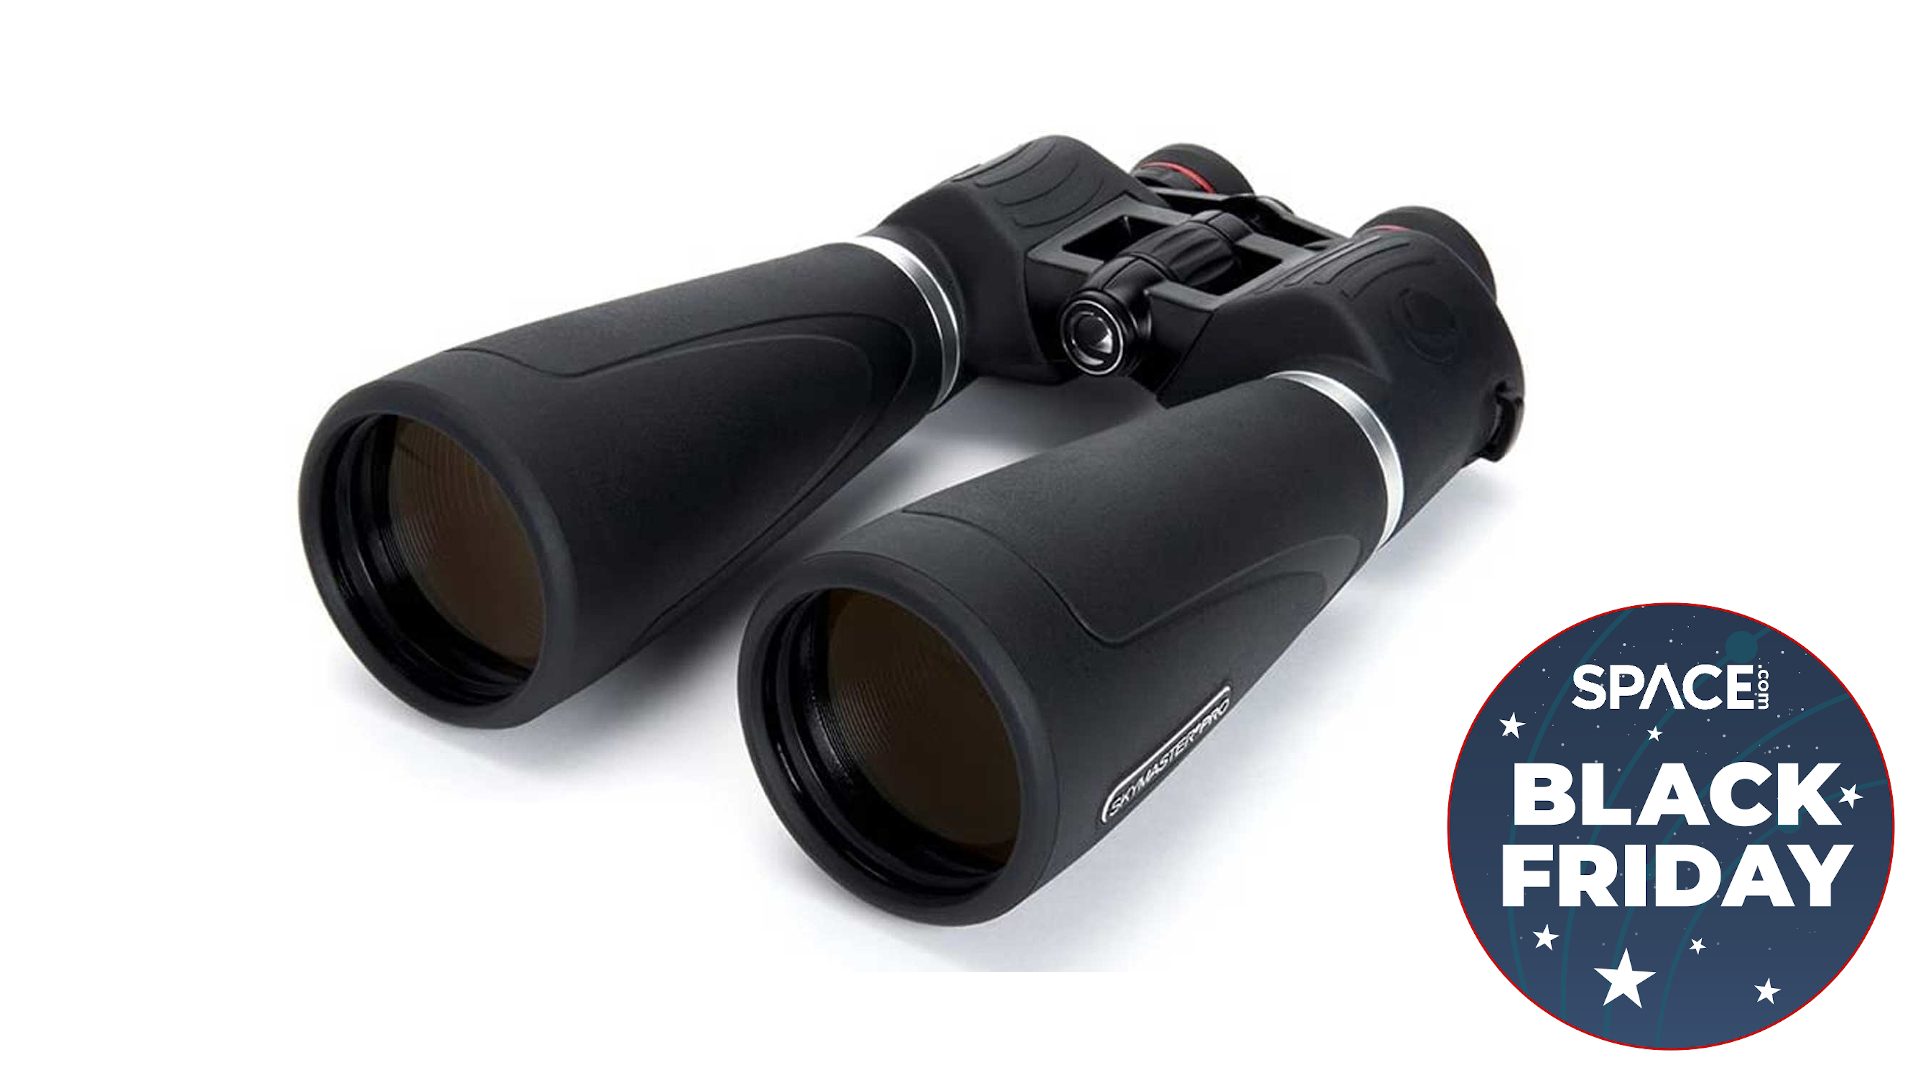 Celestron SkyMaster 15x70 binoculars